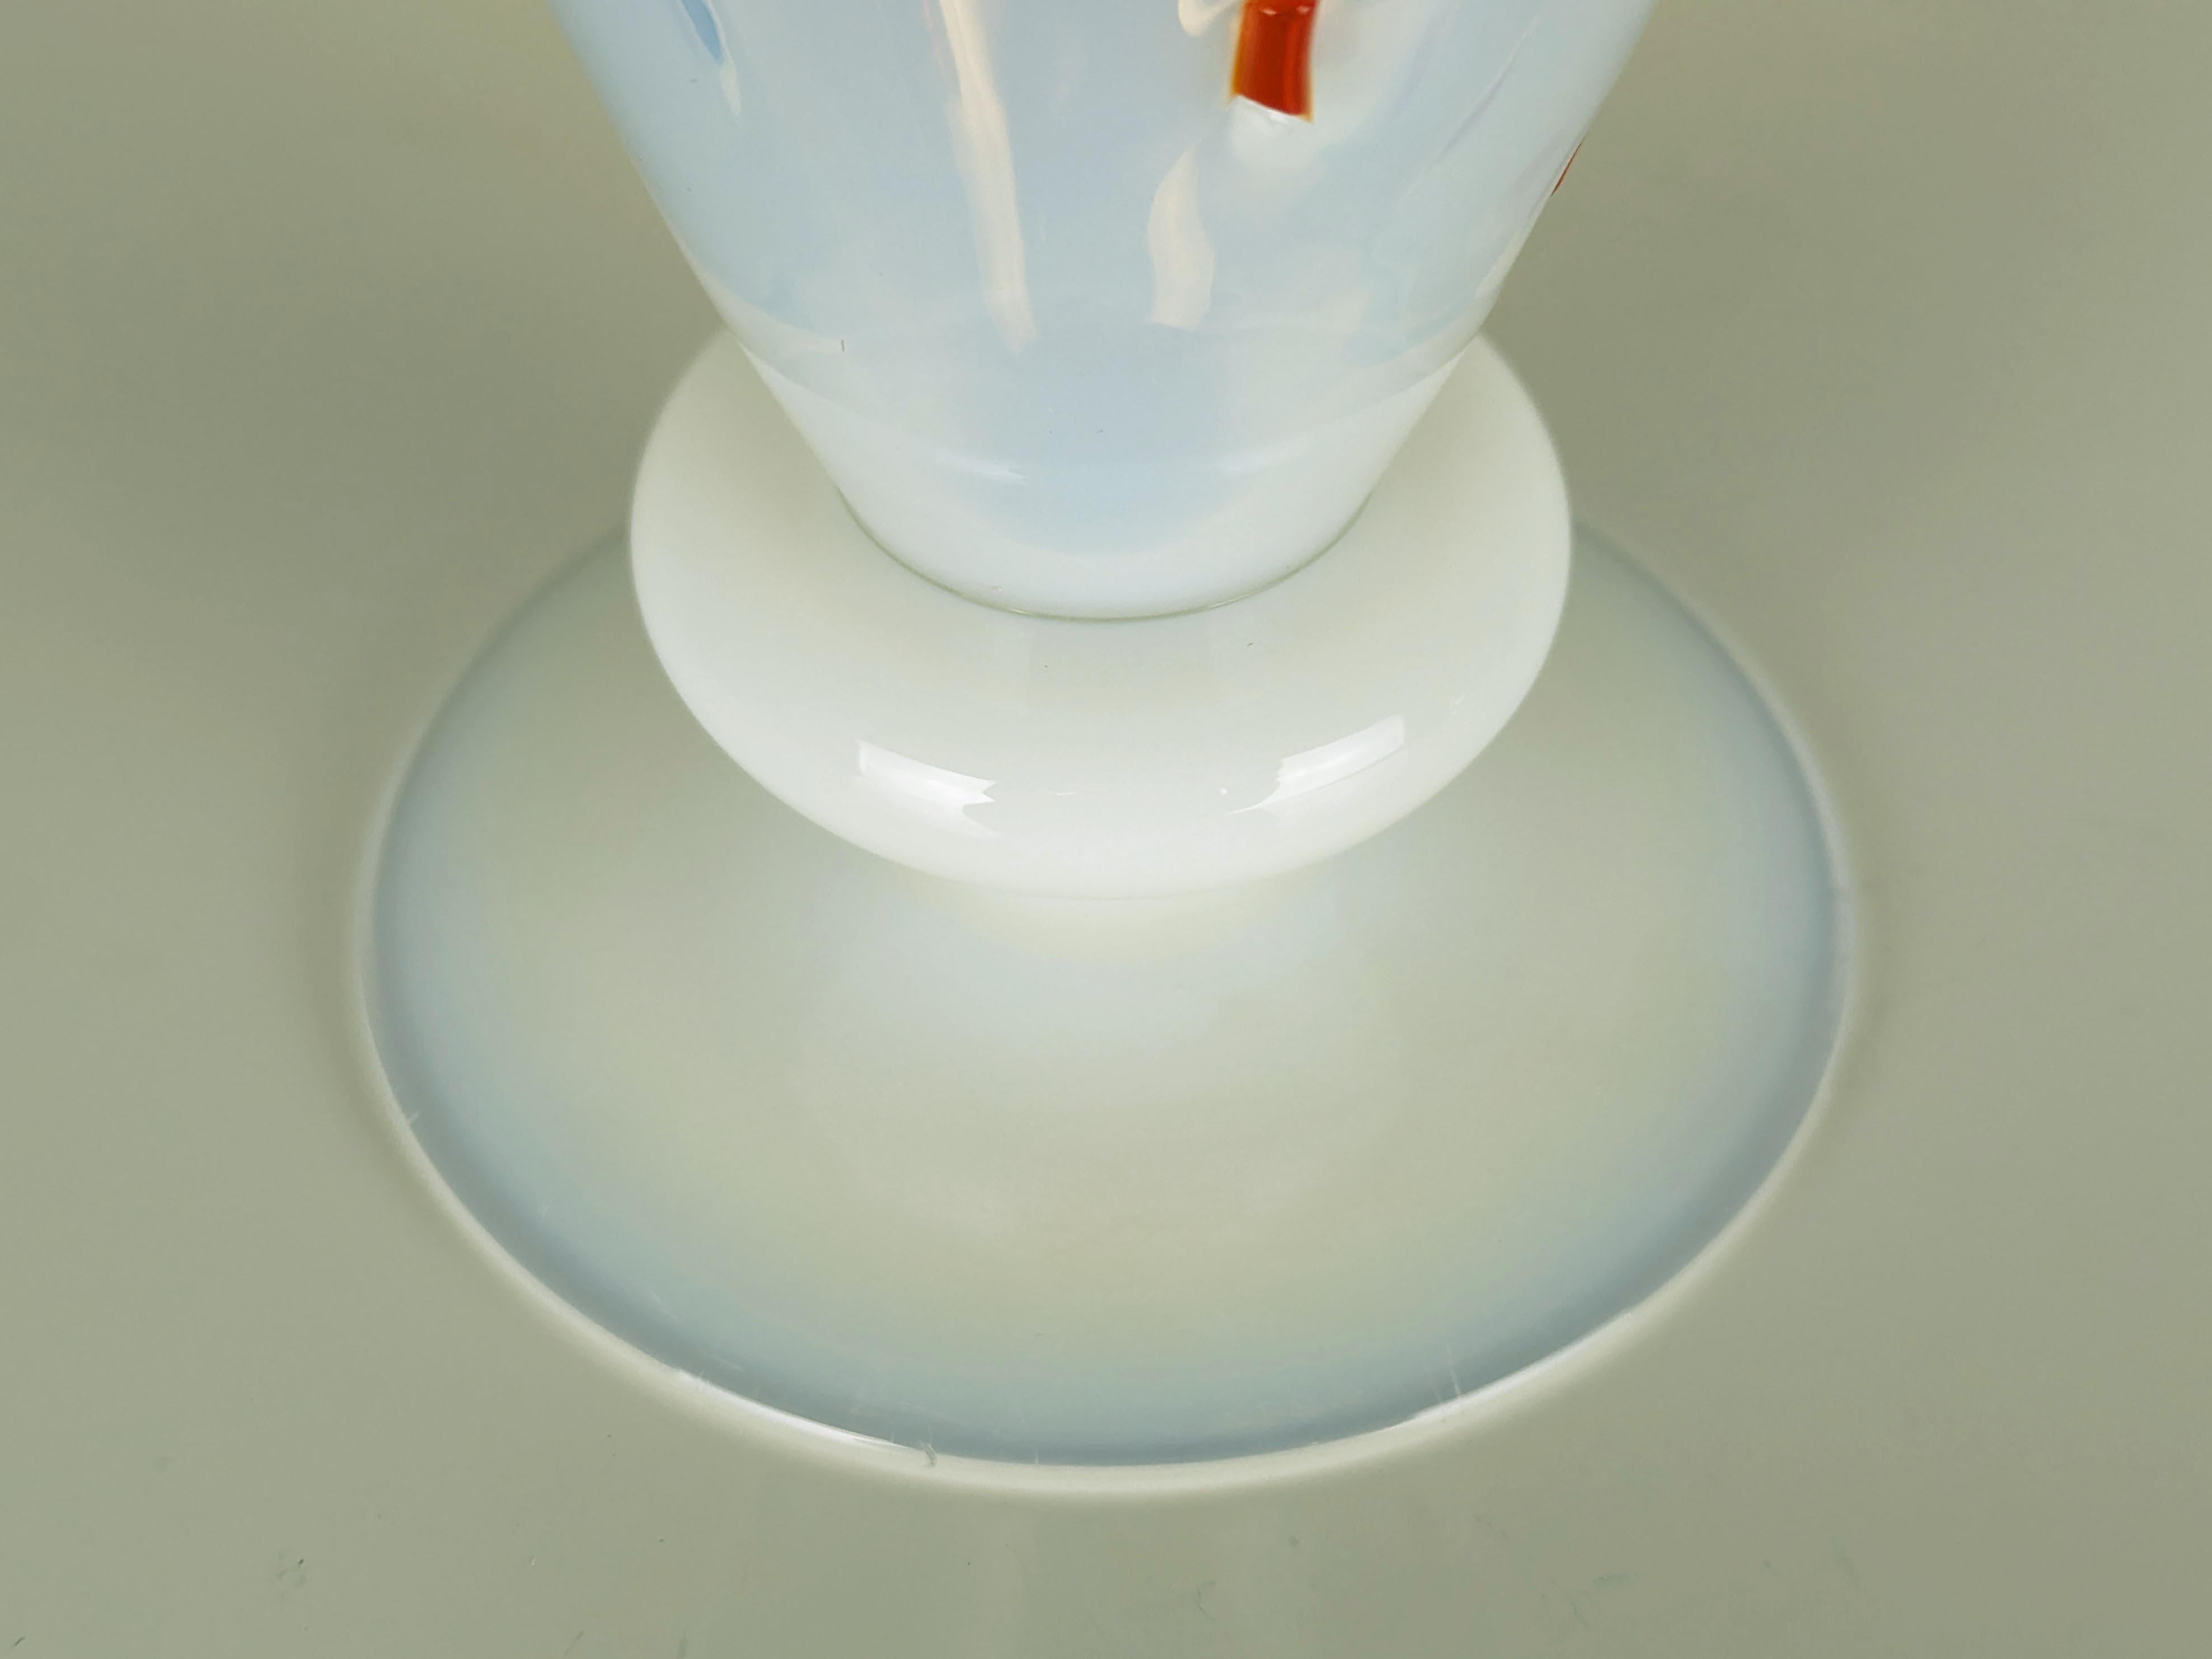 Grande calice o coppa da collezione in vetro opalino di Murano con inserti colorati. firma e data incise sulla base. una scheggiatura visibile sul bordo come mostrato nella foto.